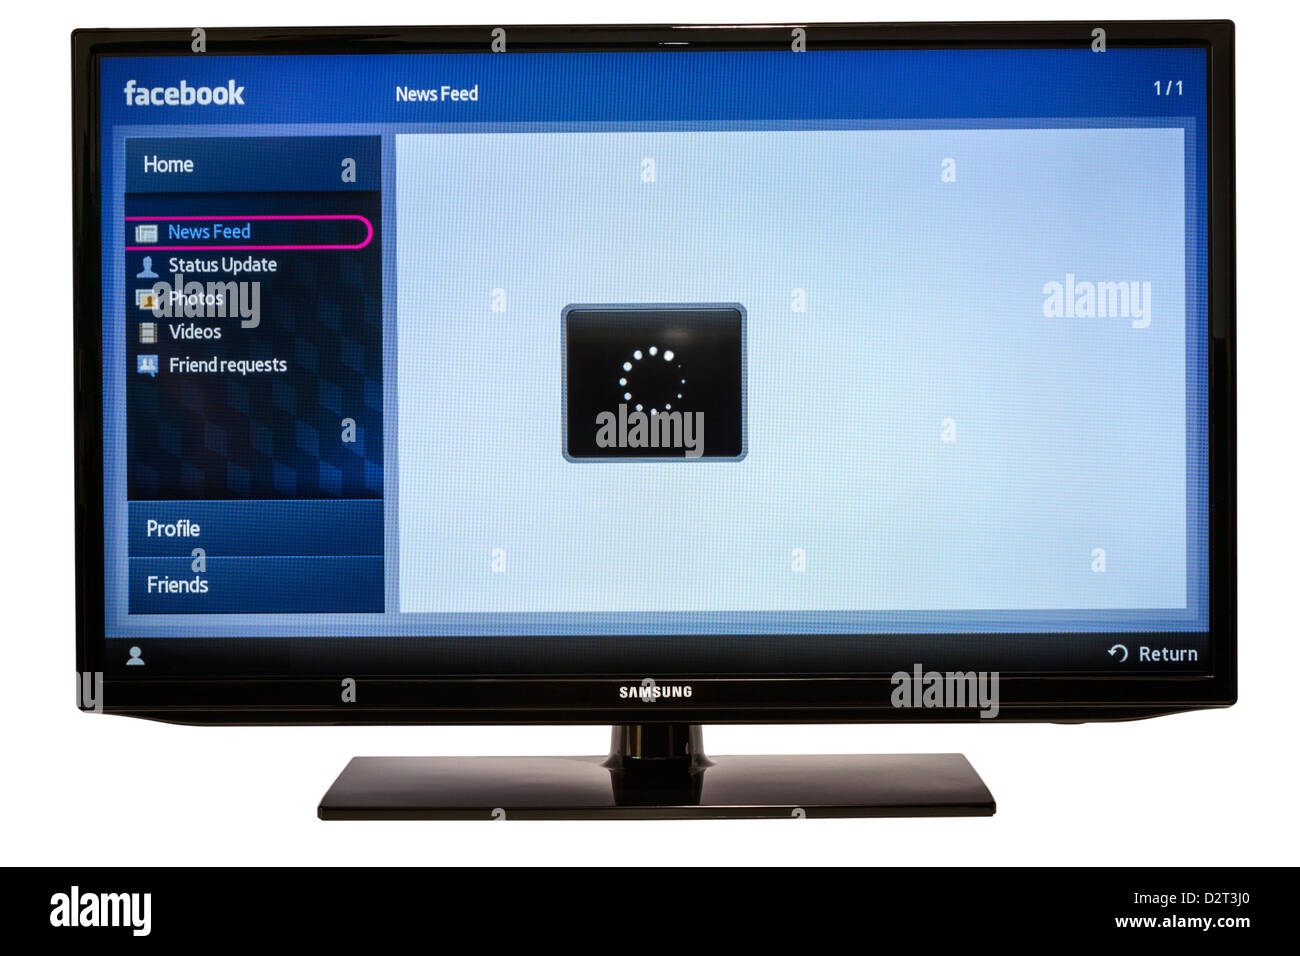 Close-up de Facebook para Samsung TV por Internet hace que sea fácil mantenerse conectado y compartir información con sus amigos desde su televisor. Foto de stock